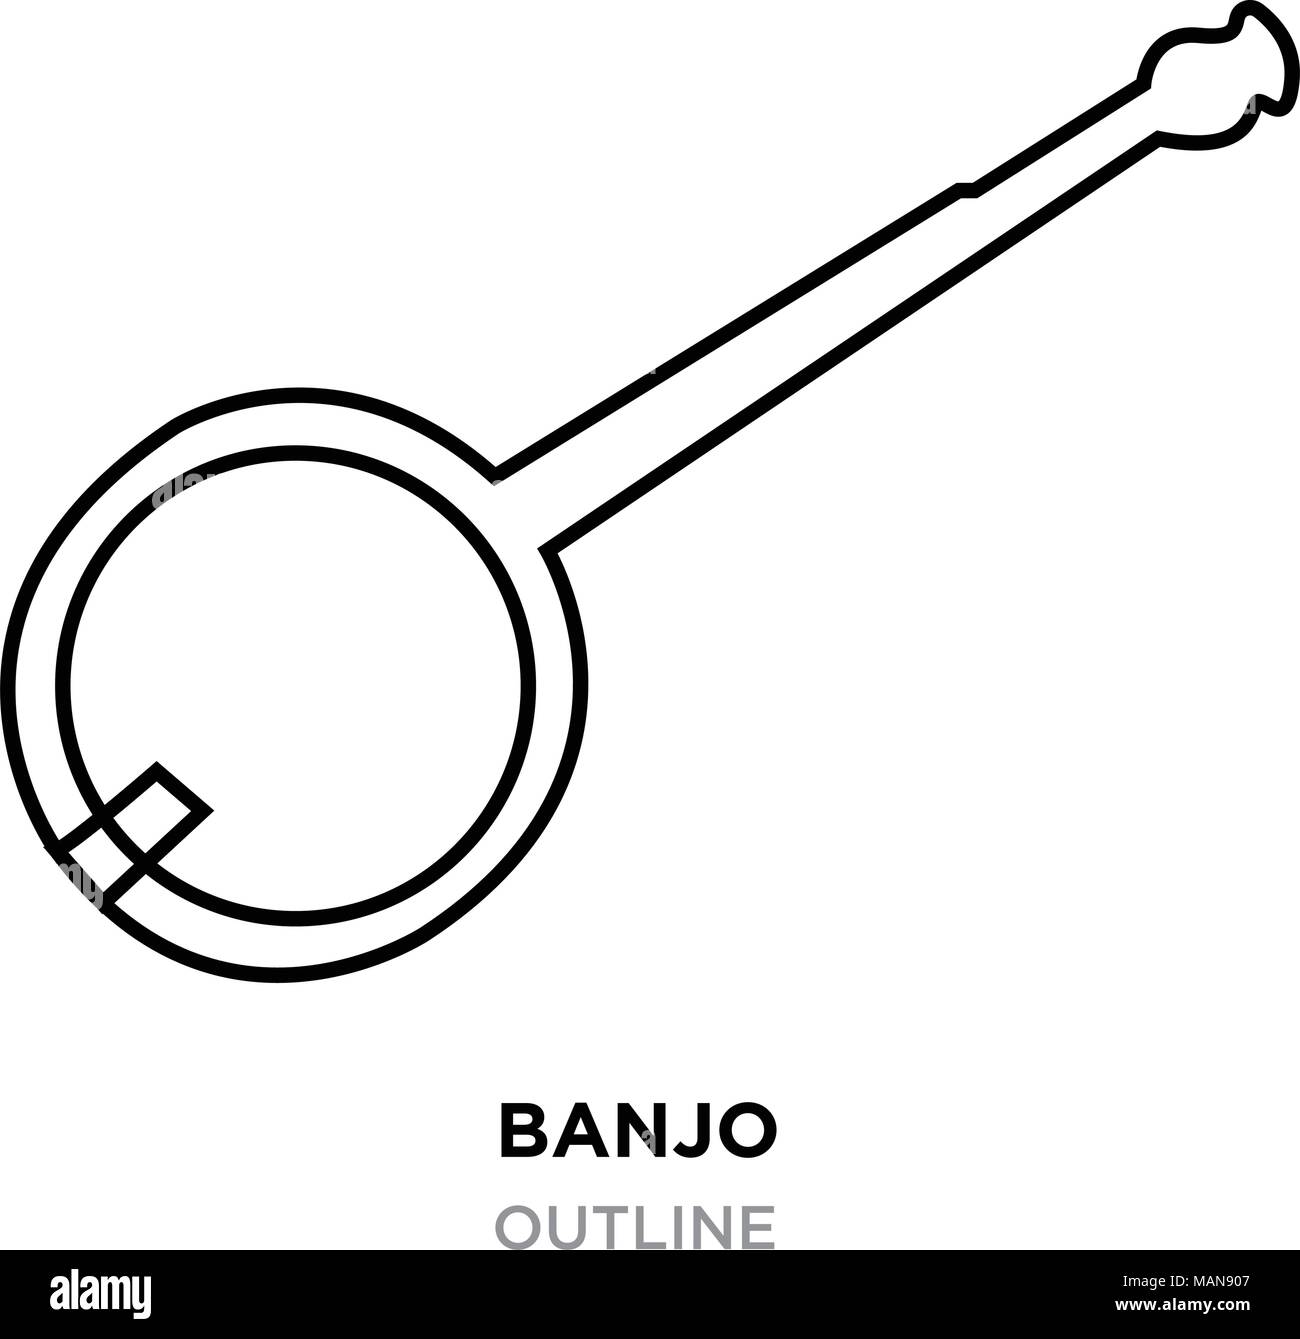 banjo outline on white background, vector illustration Stock Vector